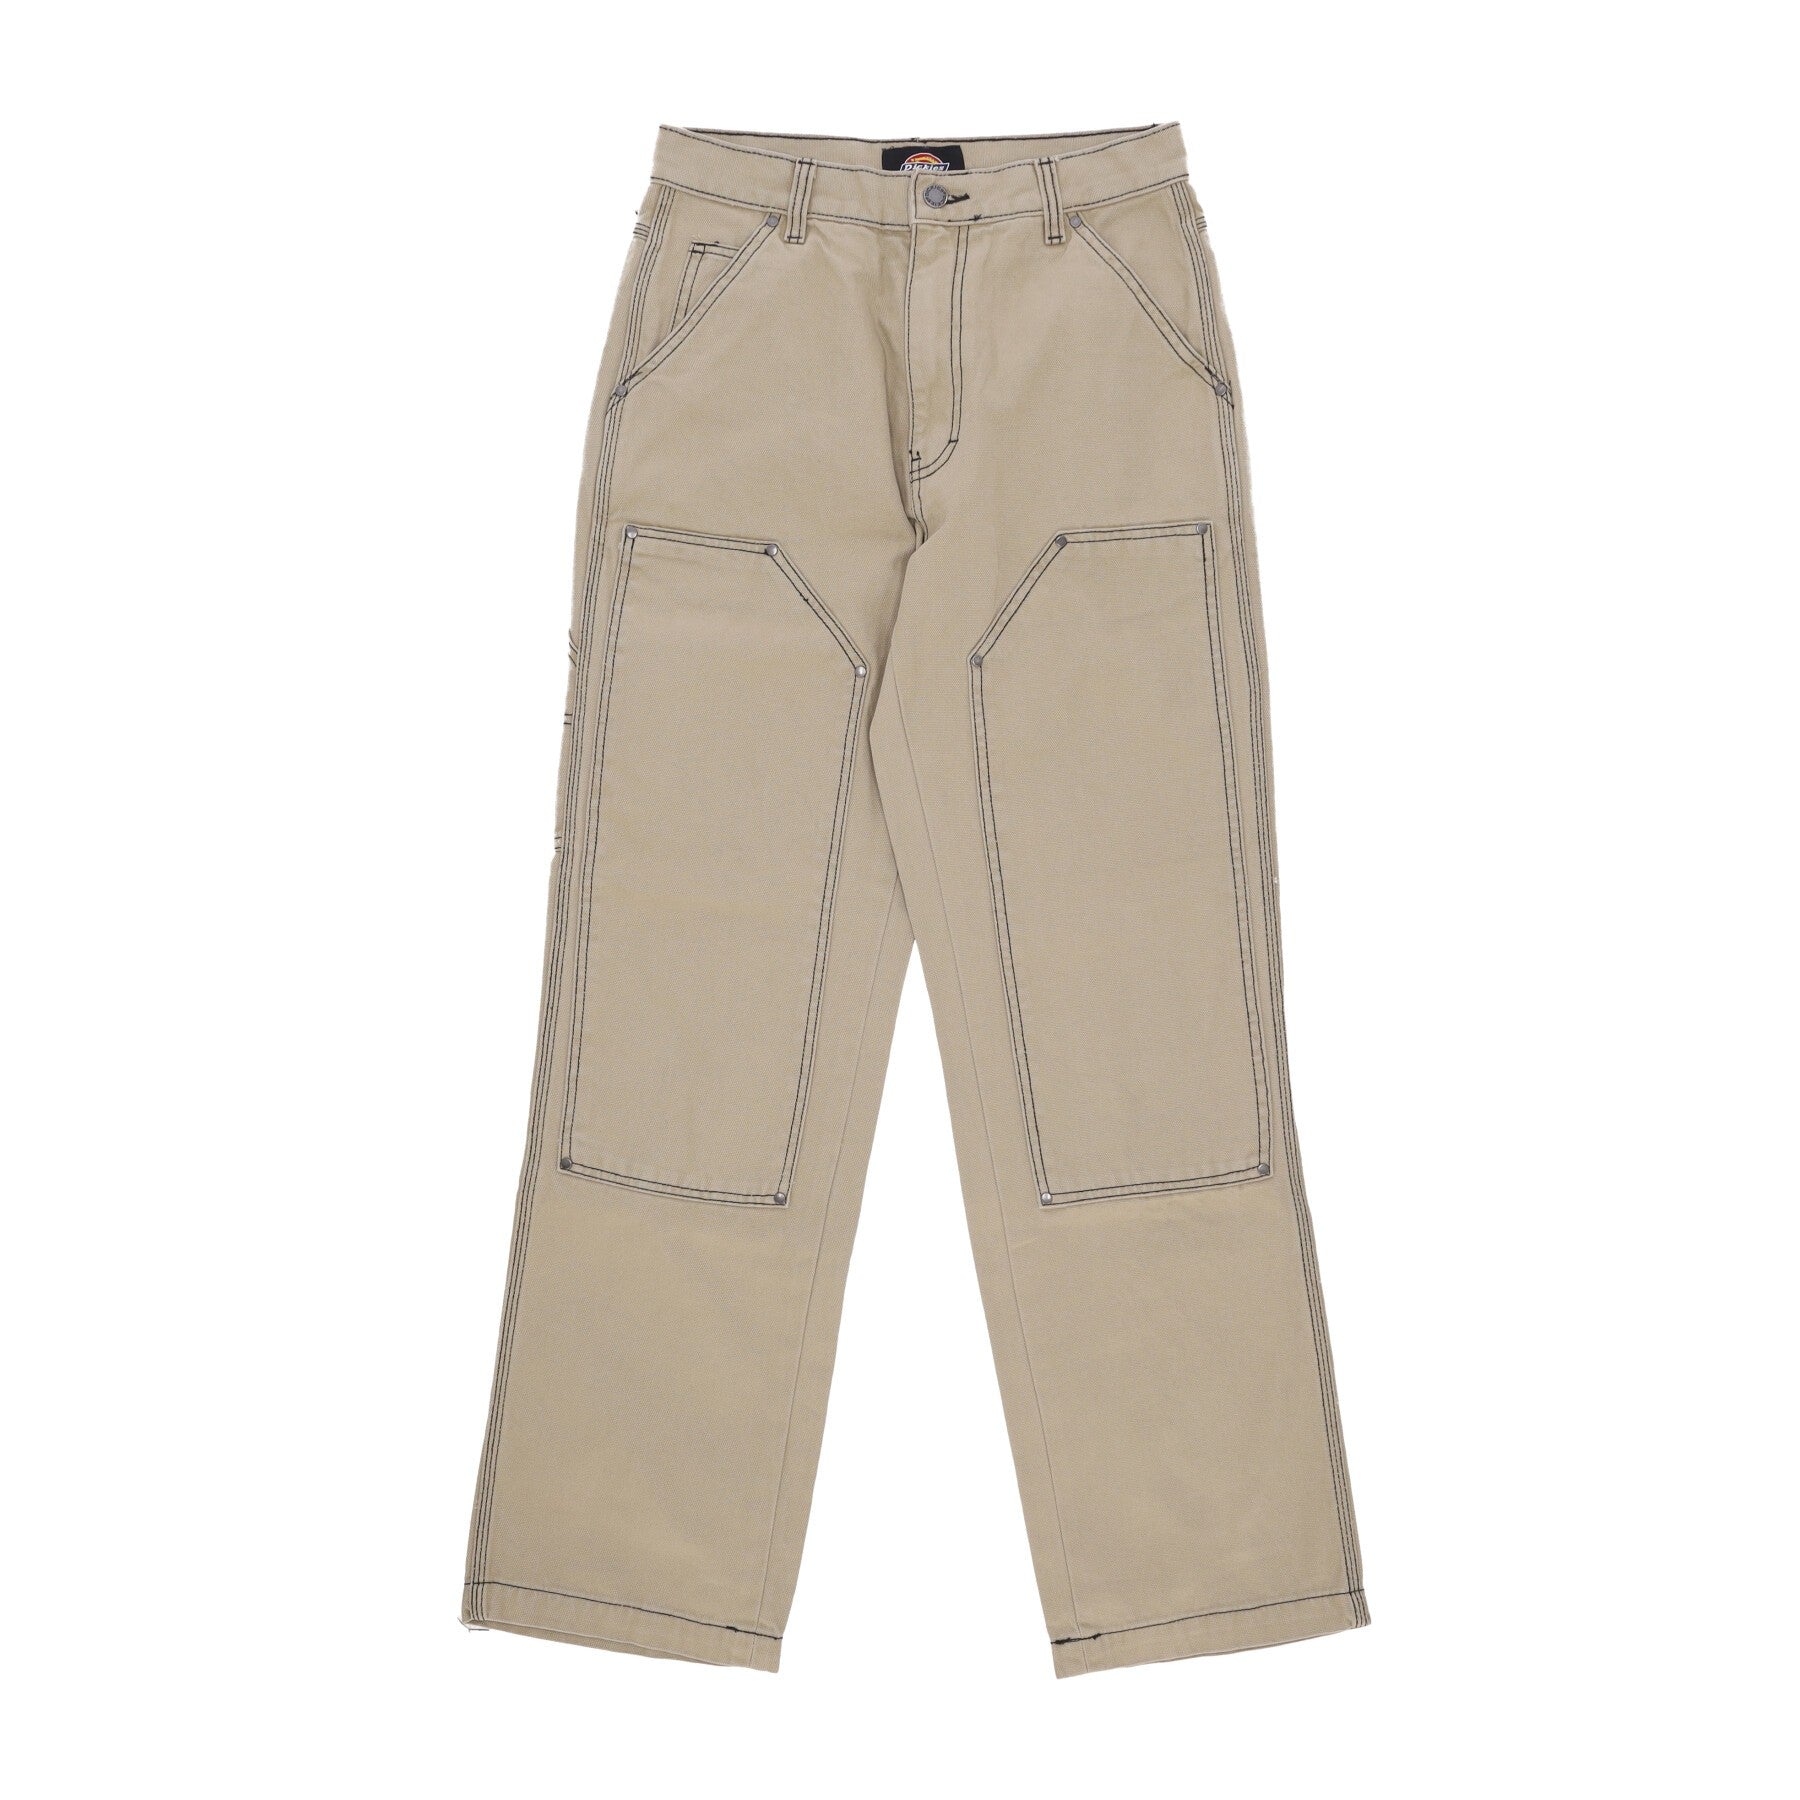 Madras Utility Pant Desert Sand Men's Long Trousers